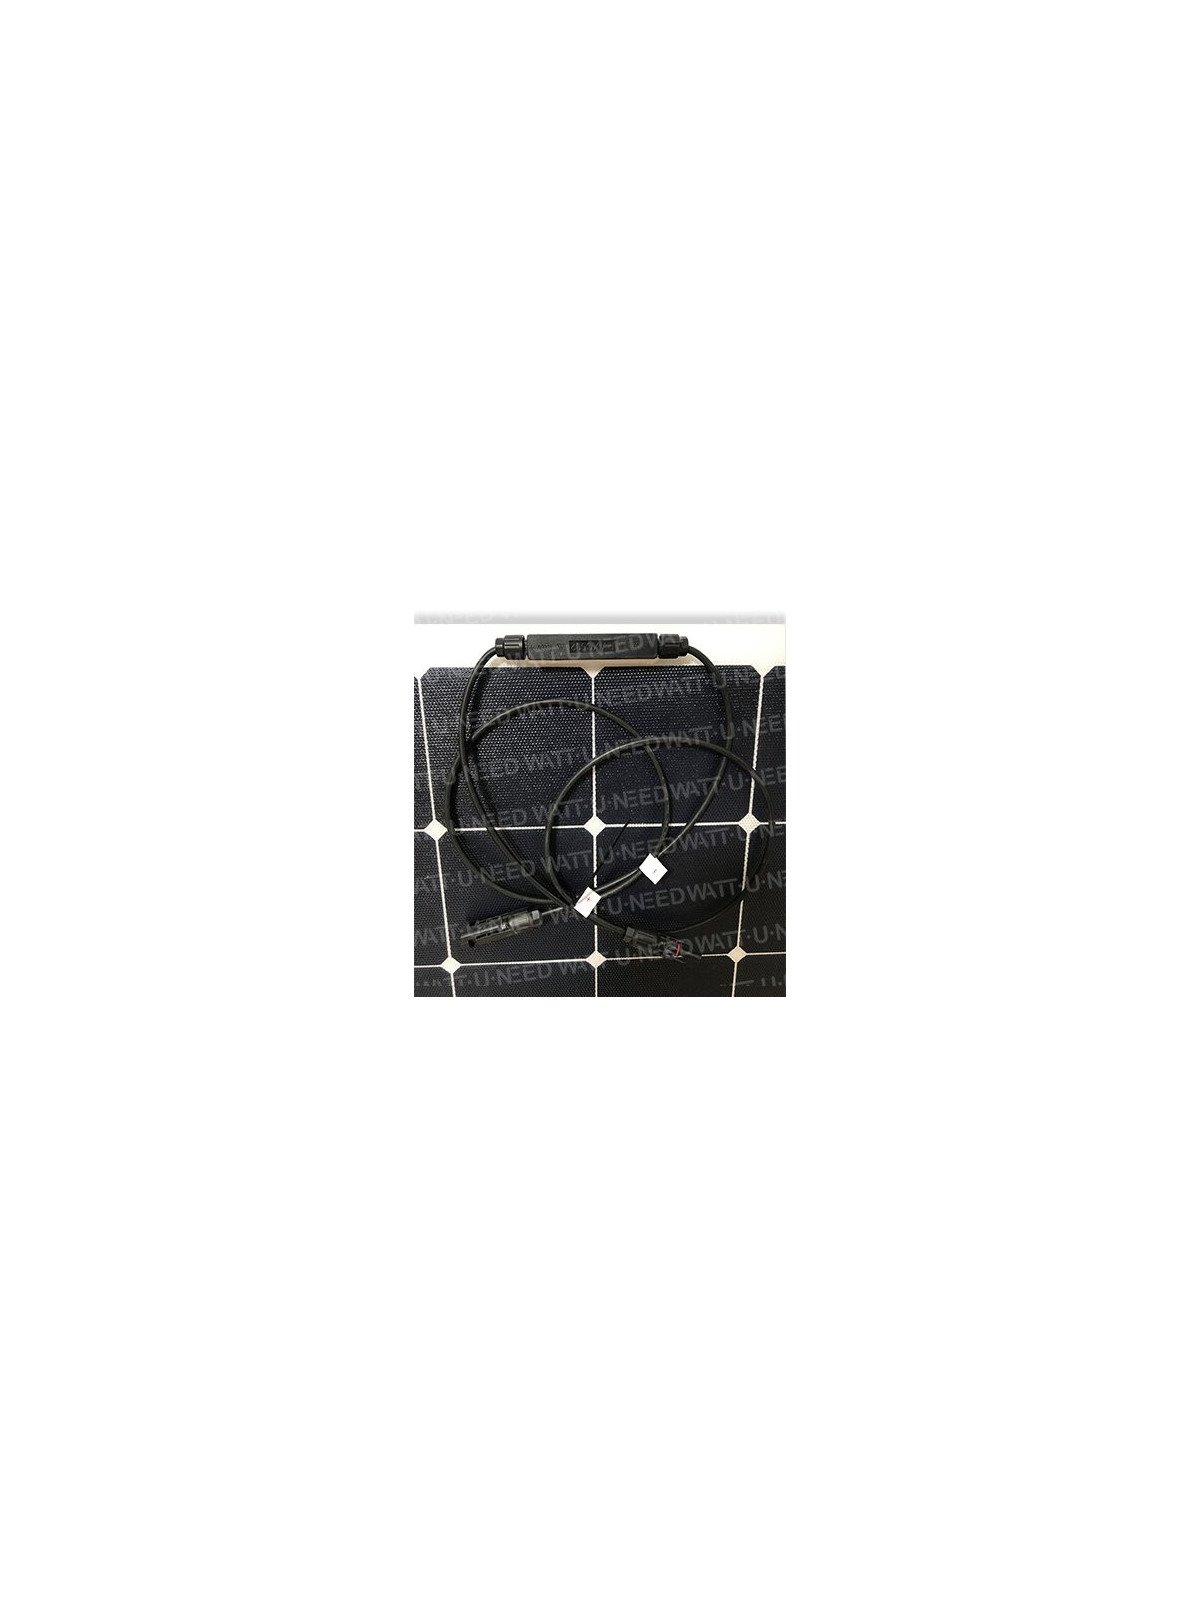 MX FLEX Solarpanel 140 Wp